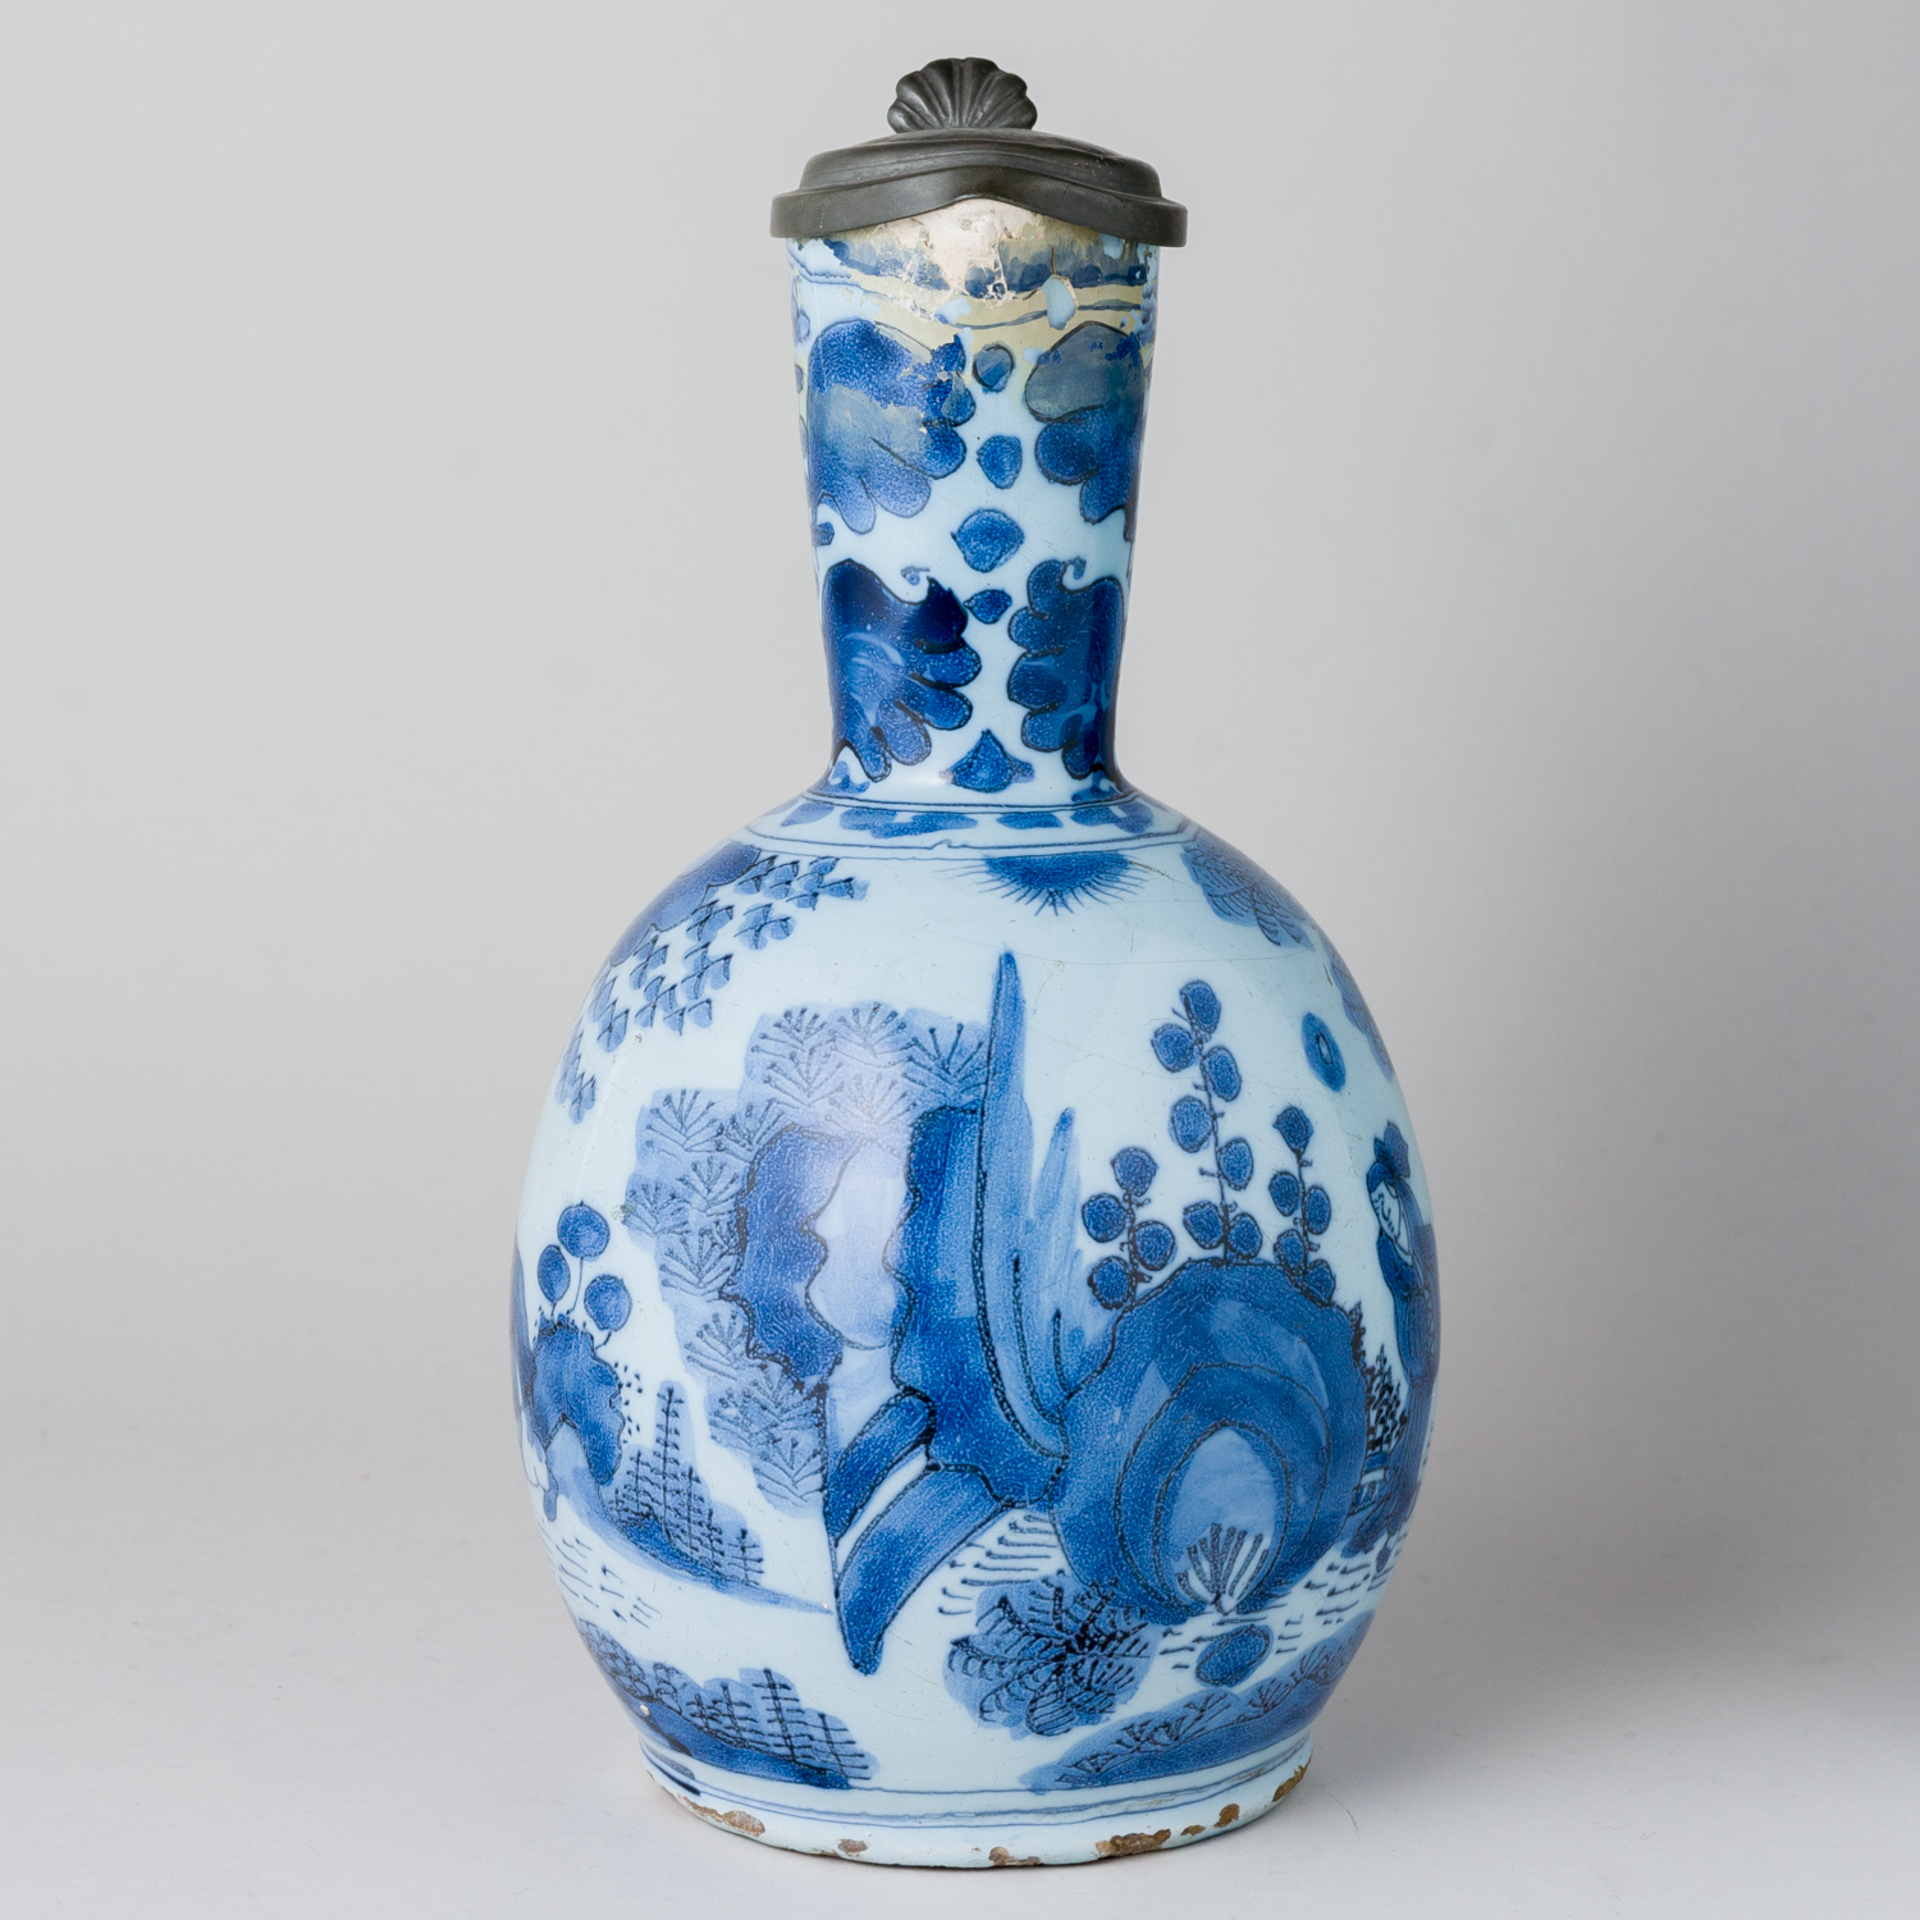 Fayence Delft Krug mit Zinndeckel im Chinesischen Stil  Ende 18. Jhd - Bild 6 aus 12